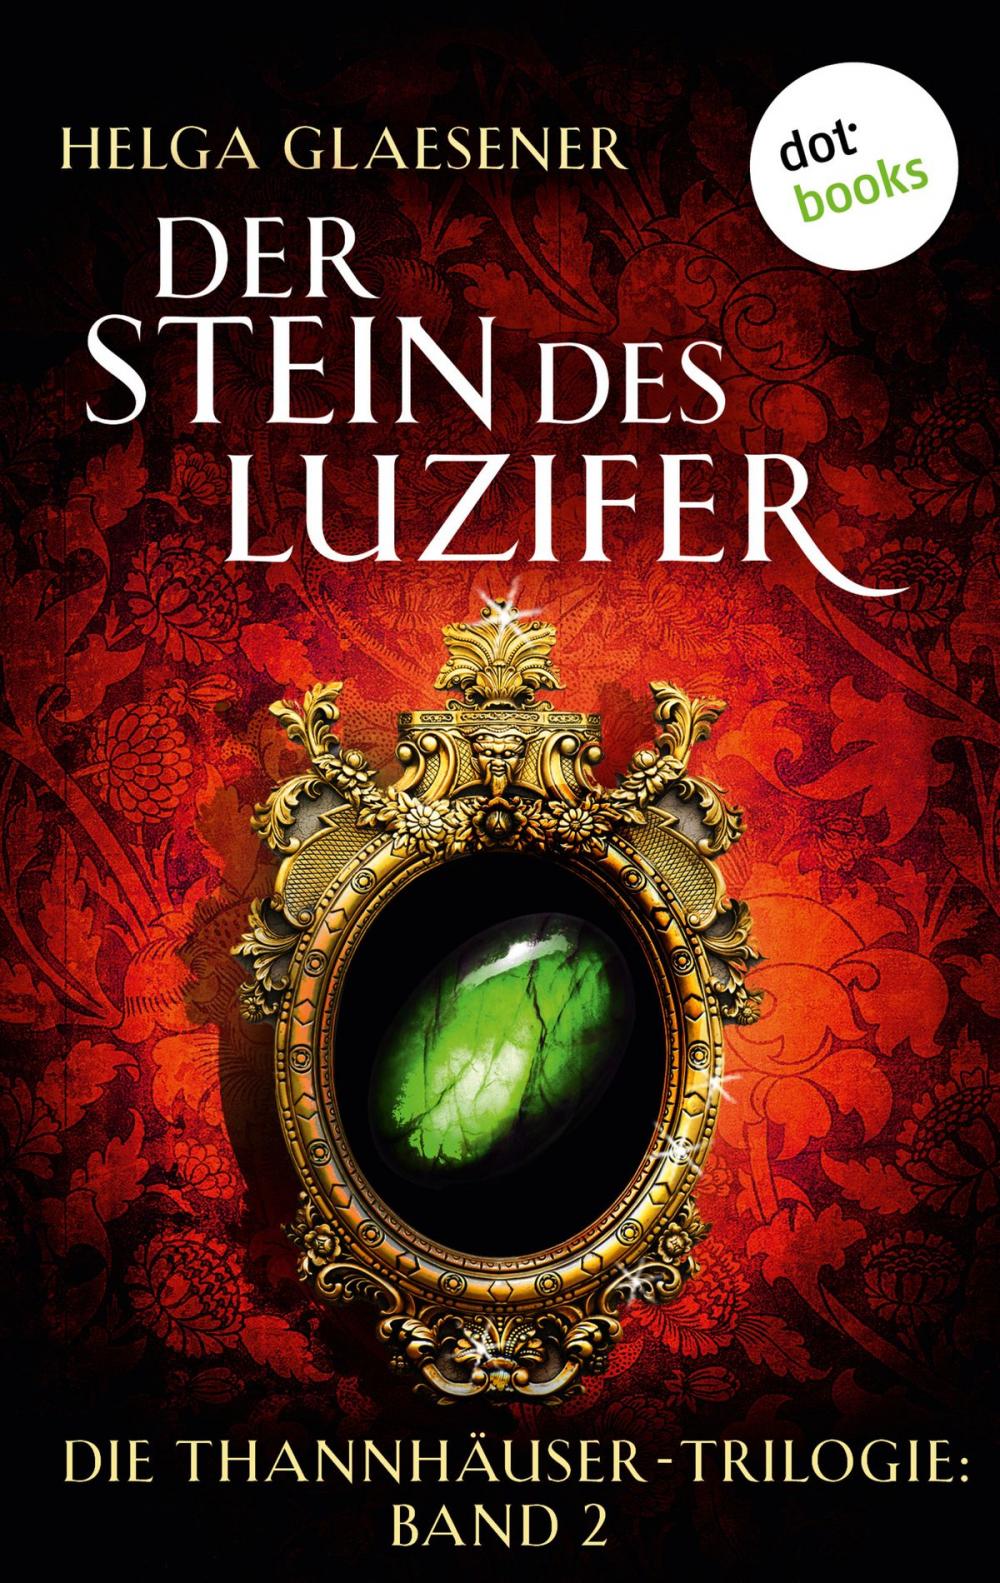 Big bigCover of Die Thannhäuser-Trilogie - Band 2: Der Stein des Luzifer